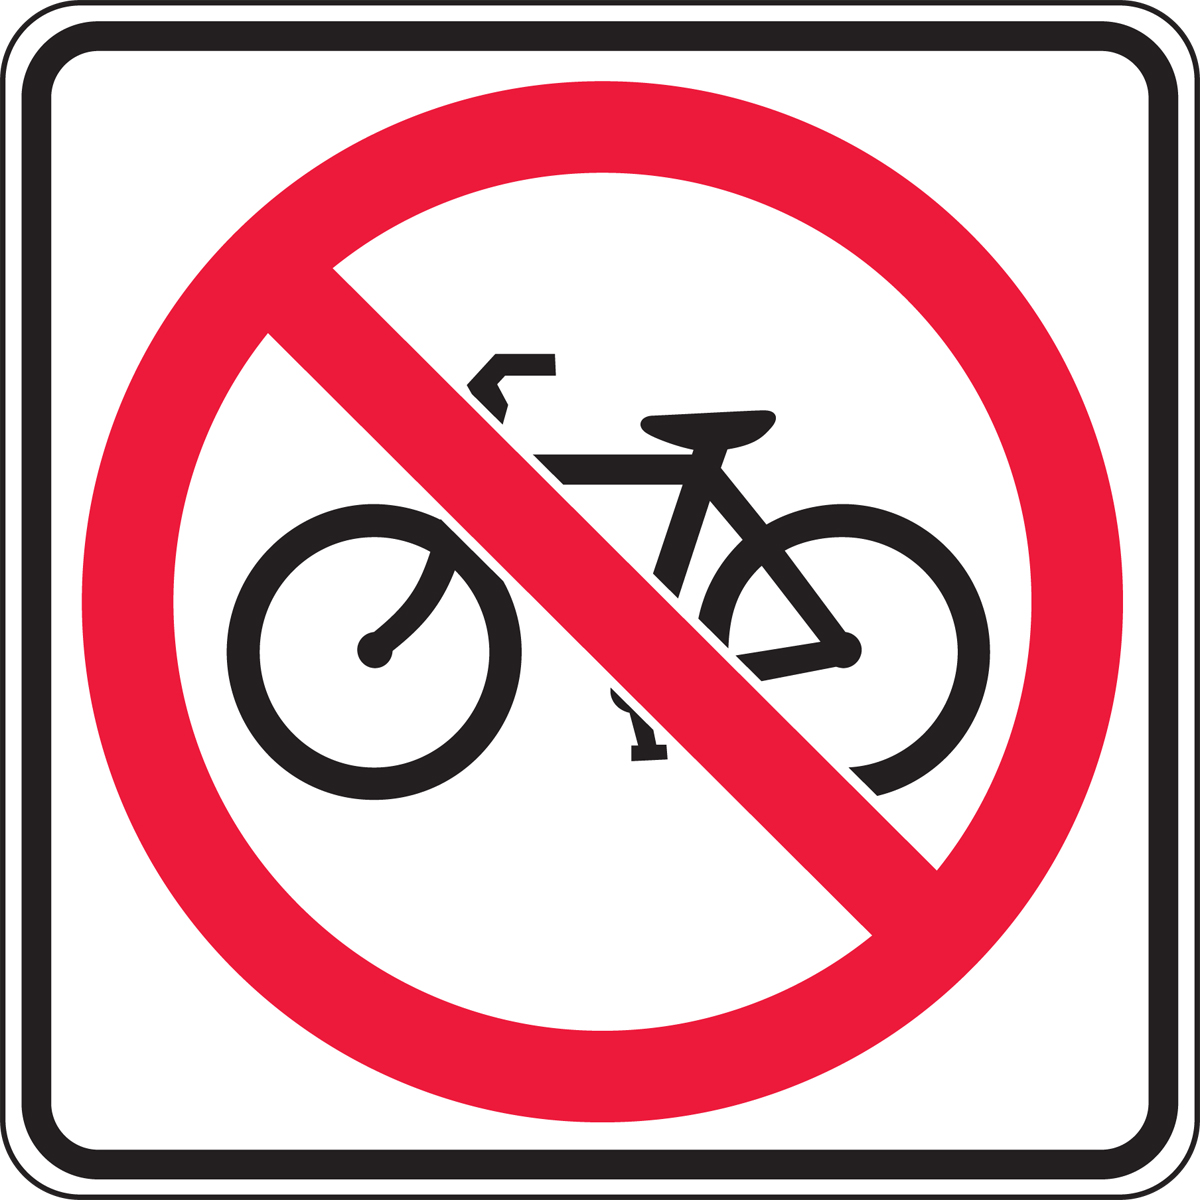 (NO BICYCLE SYMBOL)